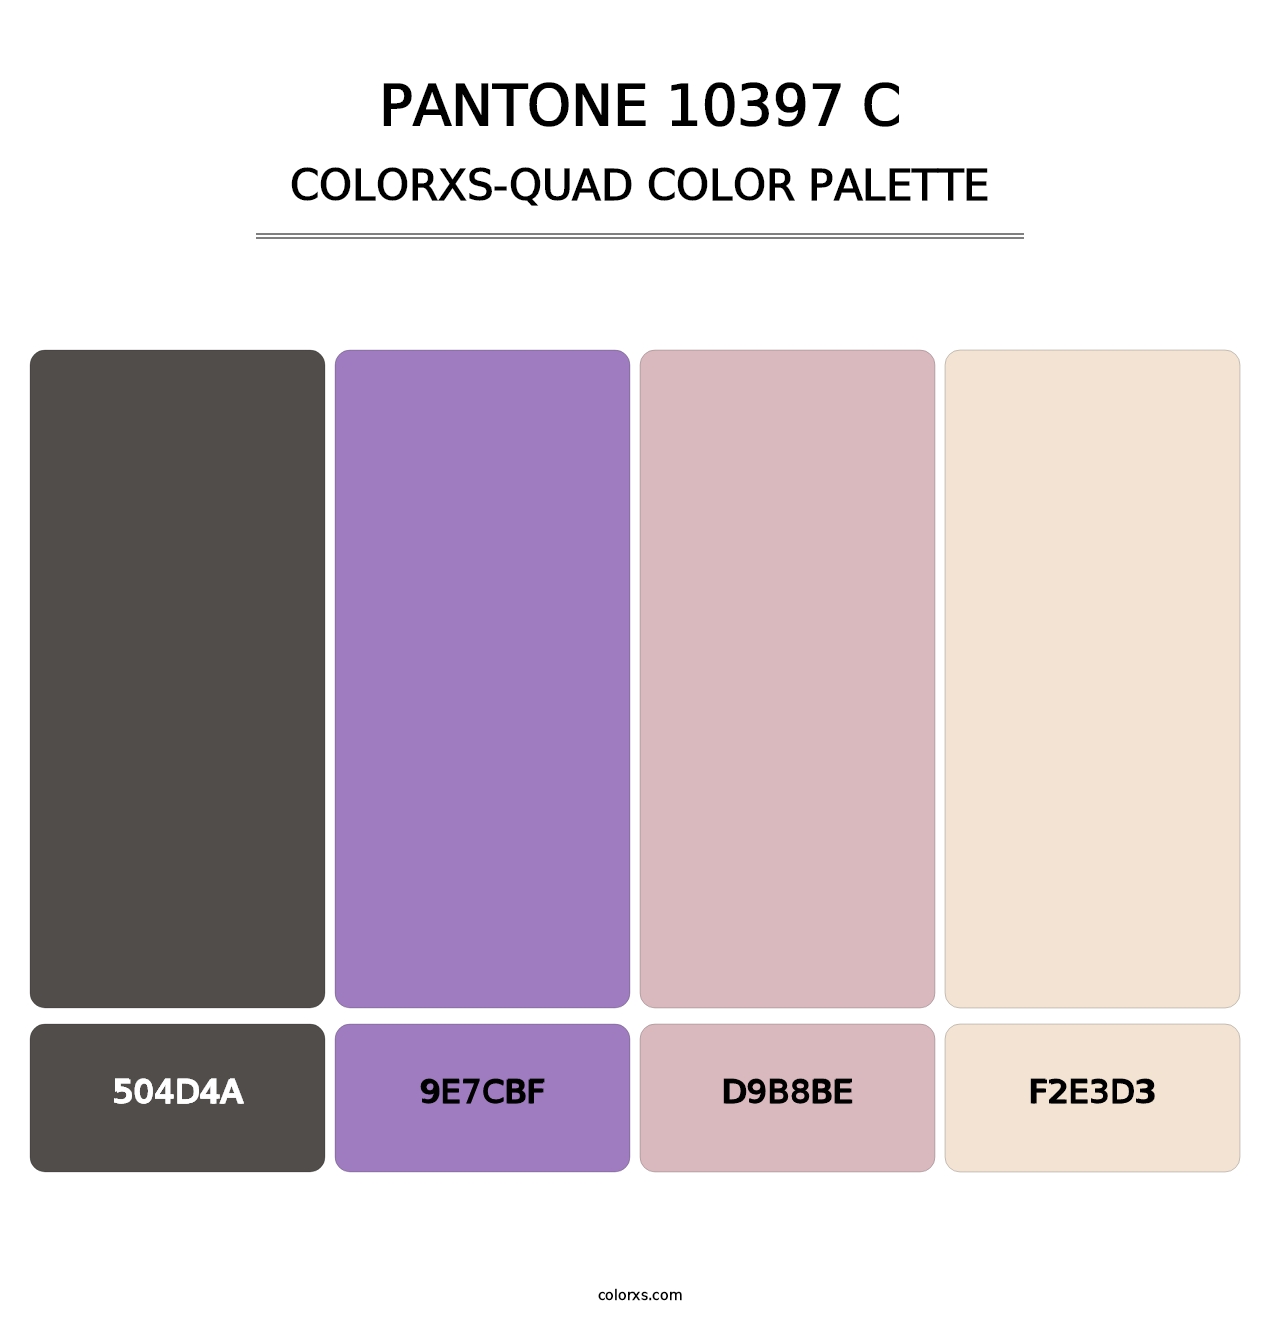 PANTONE 10397 C - Colorxs Quad Palette